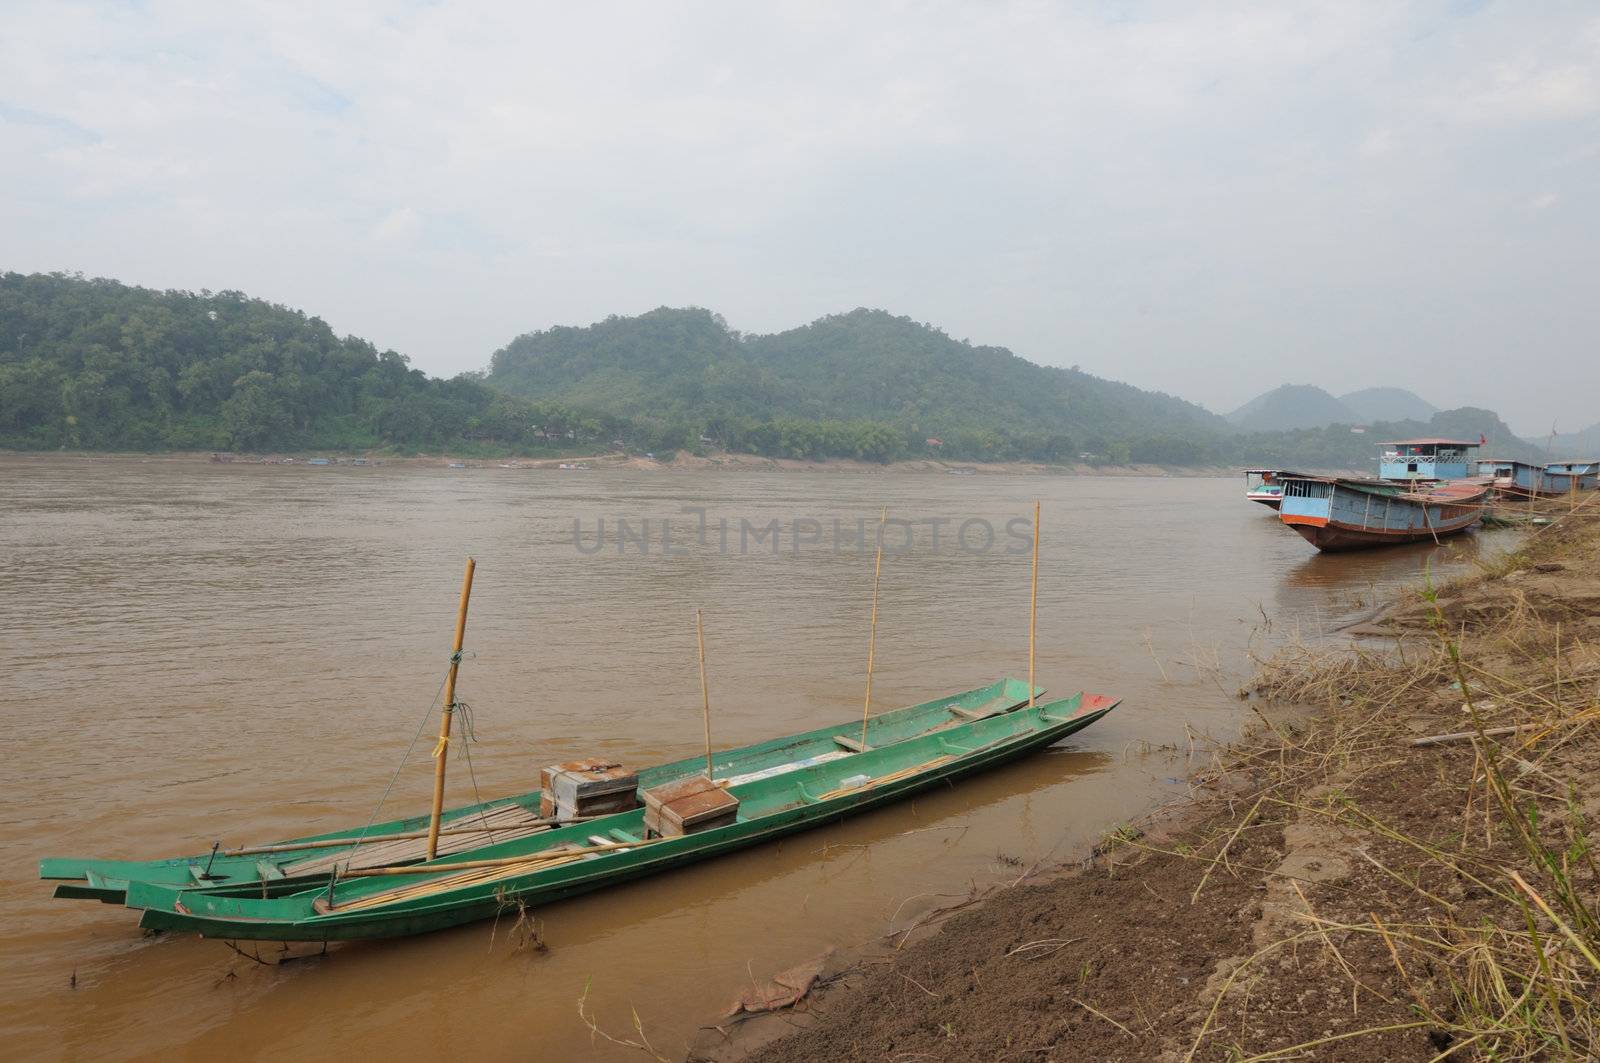 The wooden long tail boats at Mekong river in Luang Phabang, Laos.